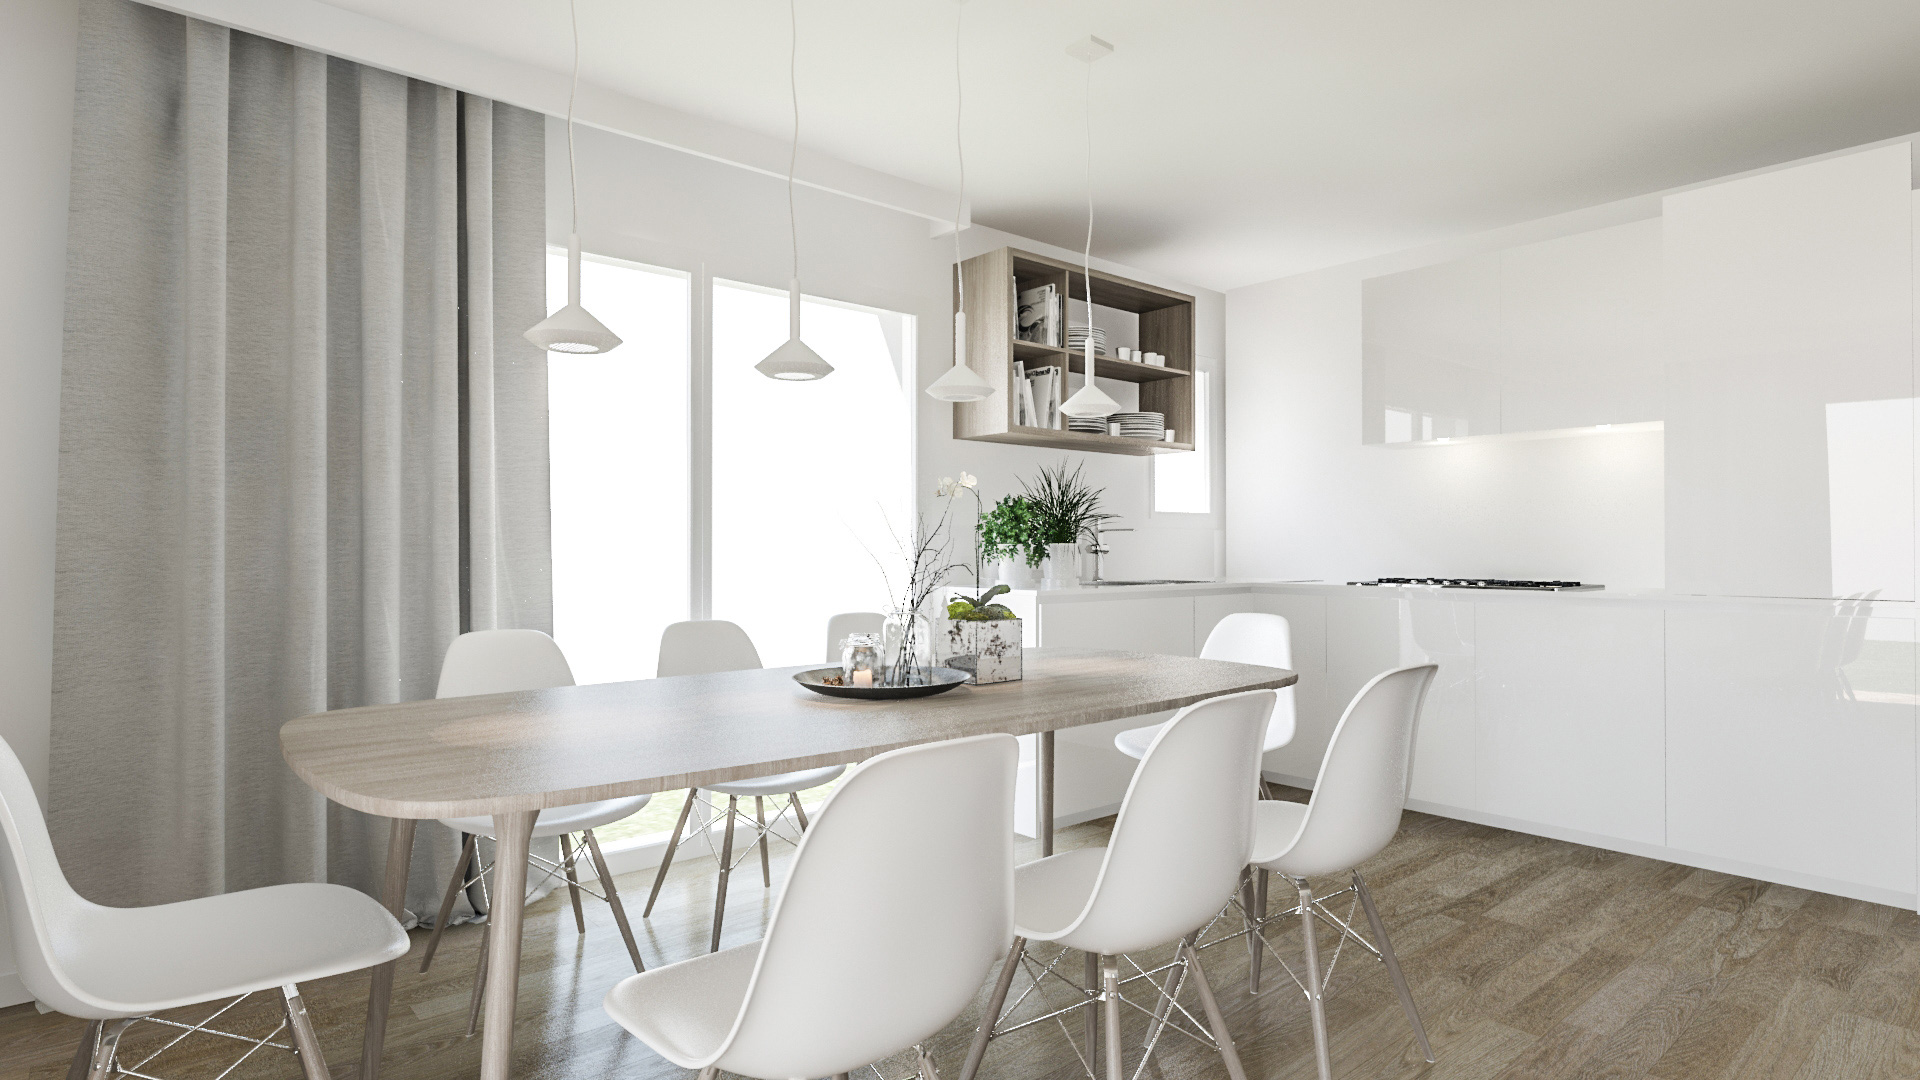 C3 Concept, visualisation 3D à Bulle. cressier villa 2 appartements intérieur